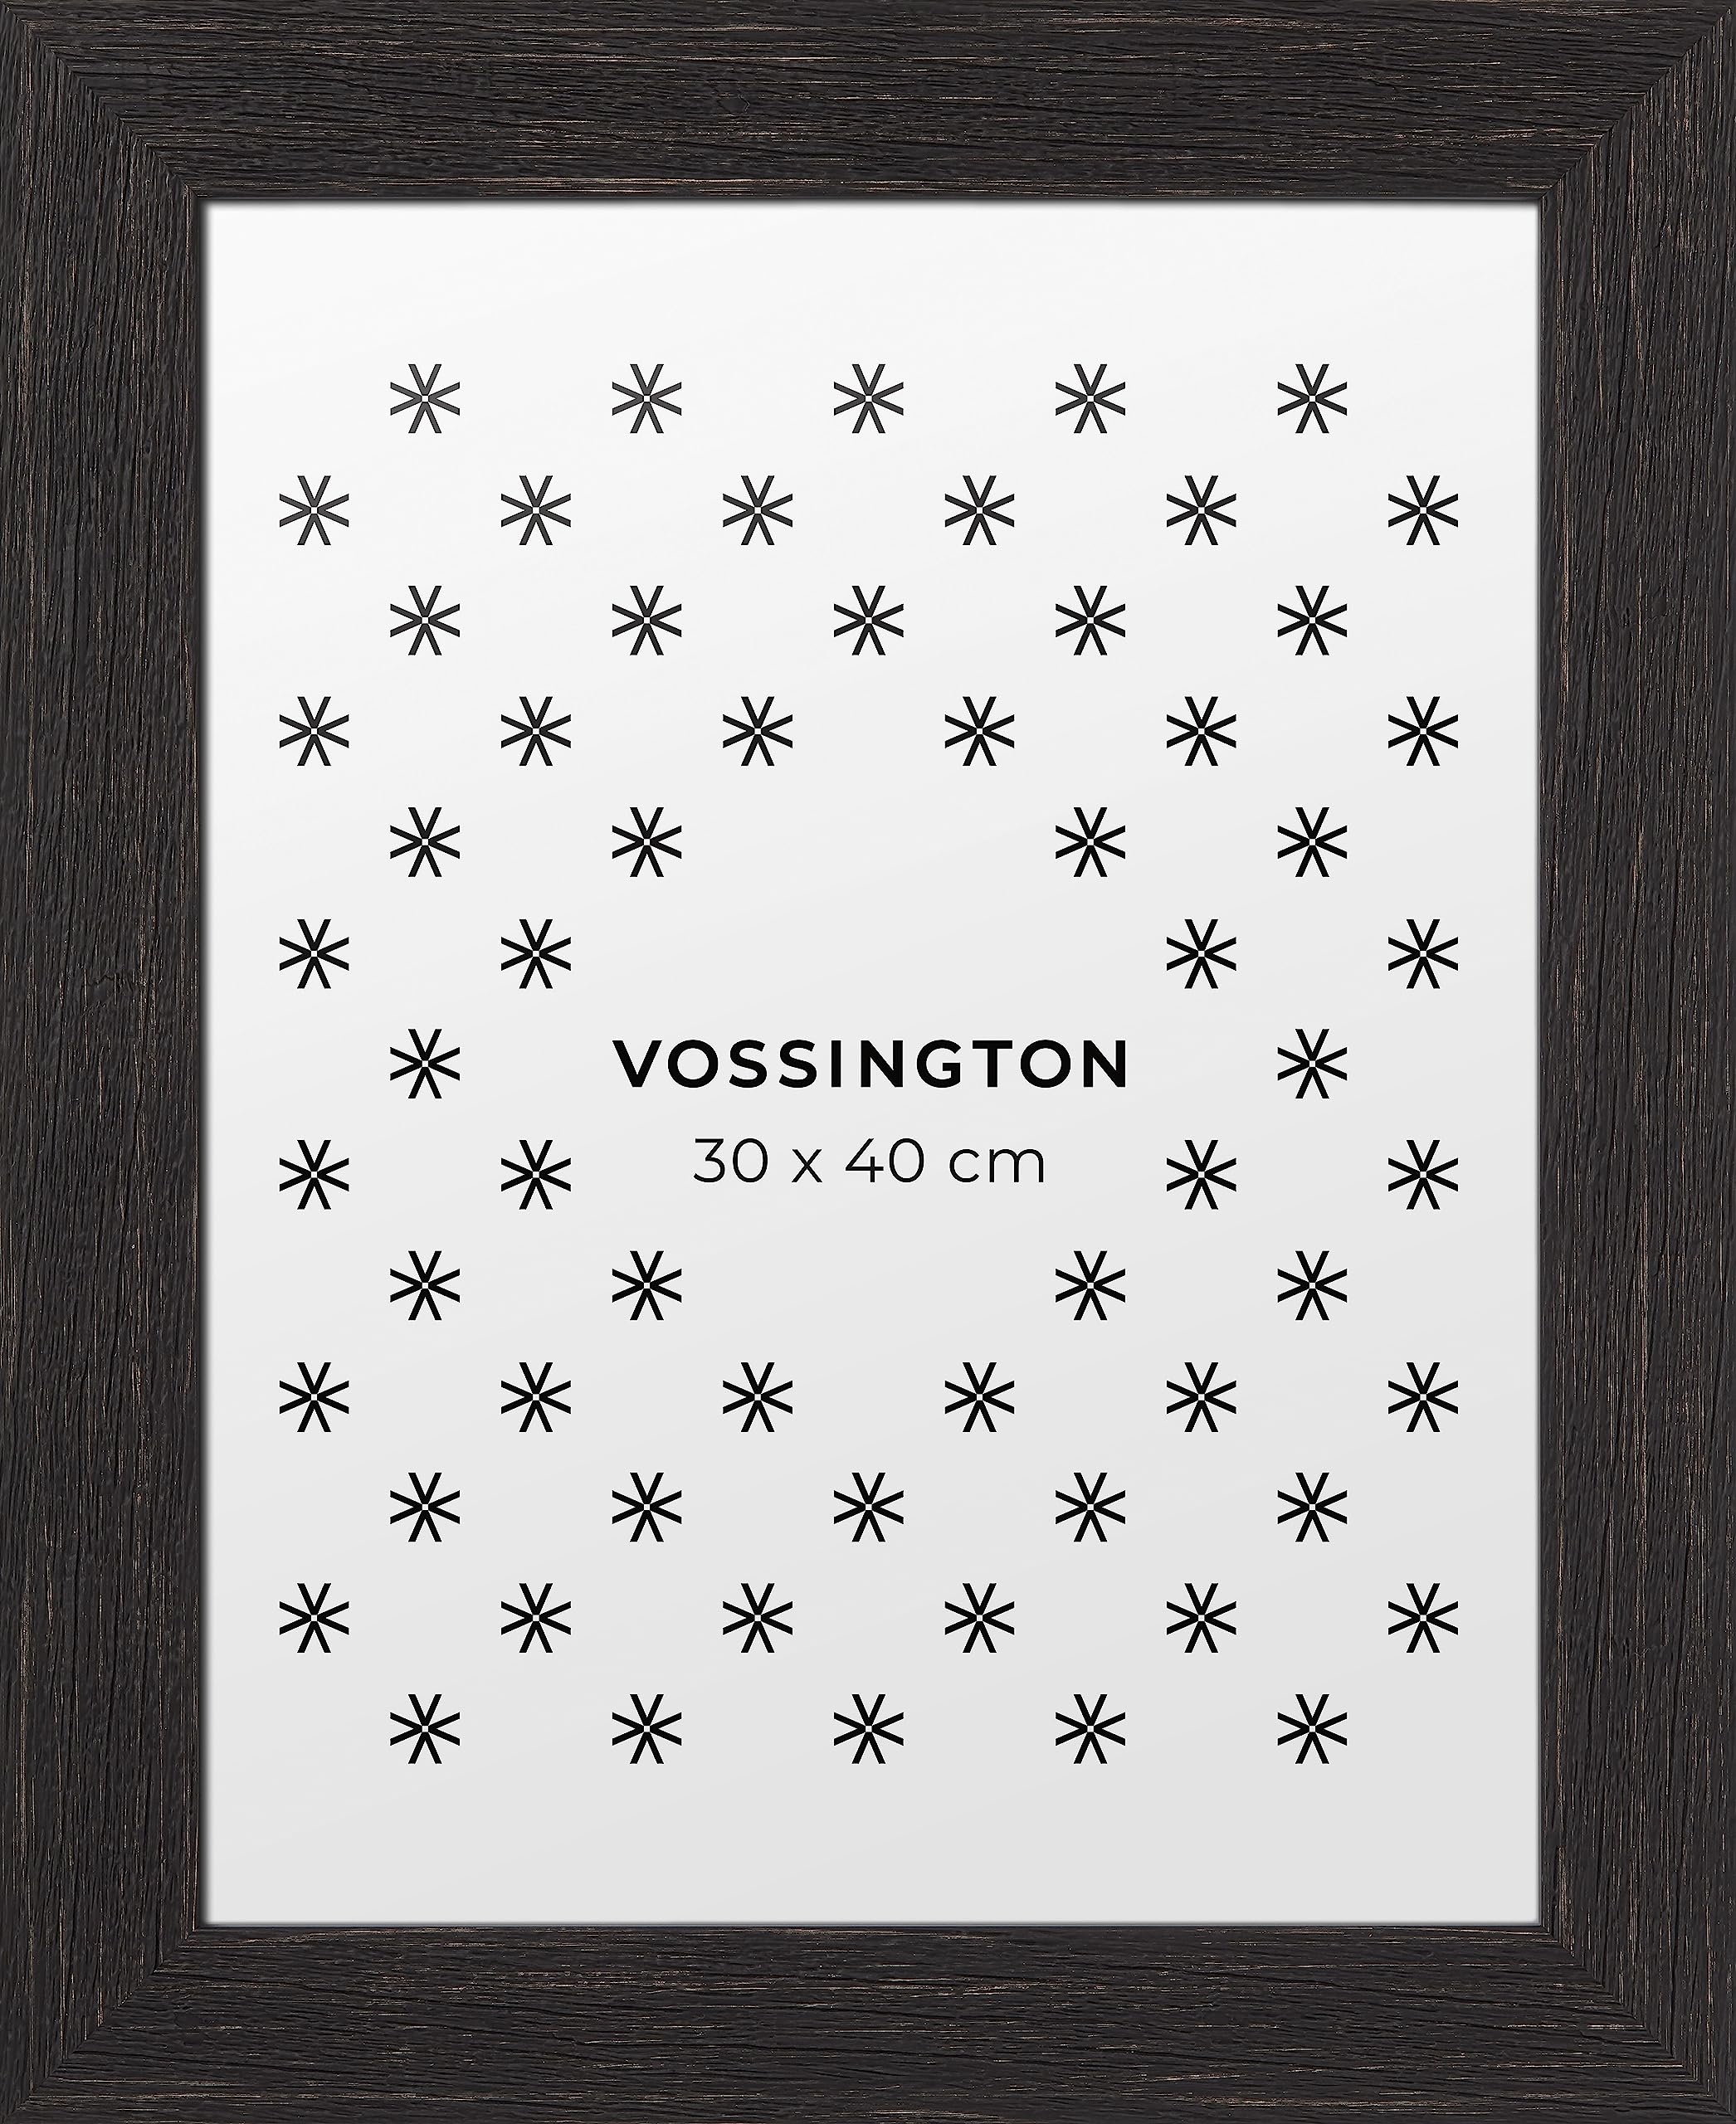 Vossington Bilderrahmen 30x40 Schwarz - Vintage - Rustikaler Charakter und Charme - Künstliche Holzmaserung - Rahmen für 1 Bild, Foto, Poster oder Puzzle im Format 30 x 40 cm (40x30 cm)